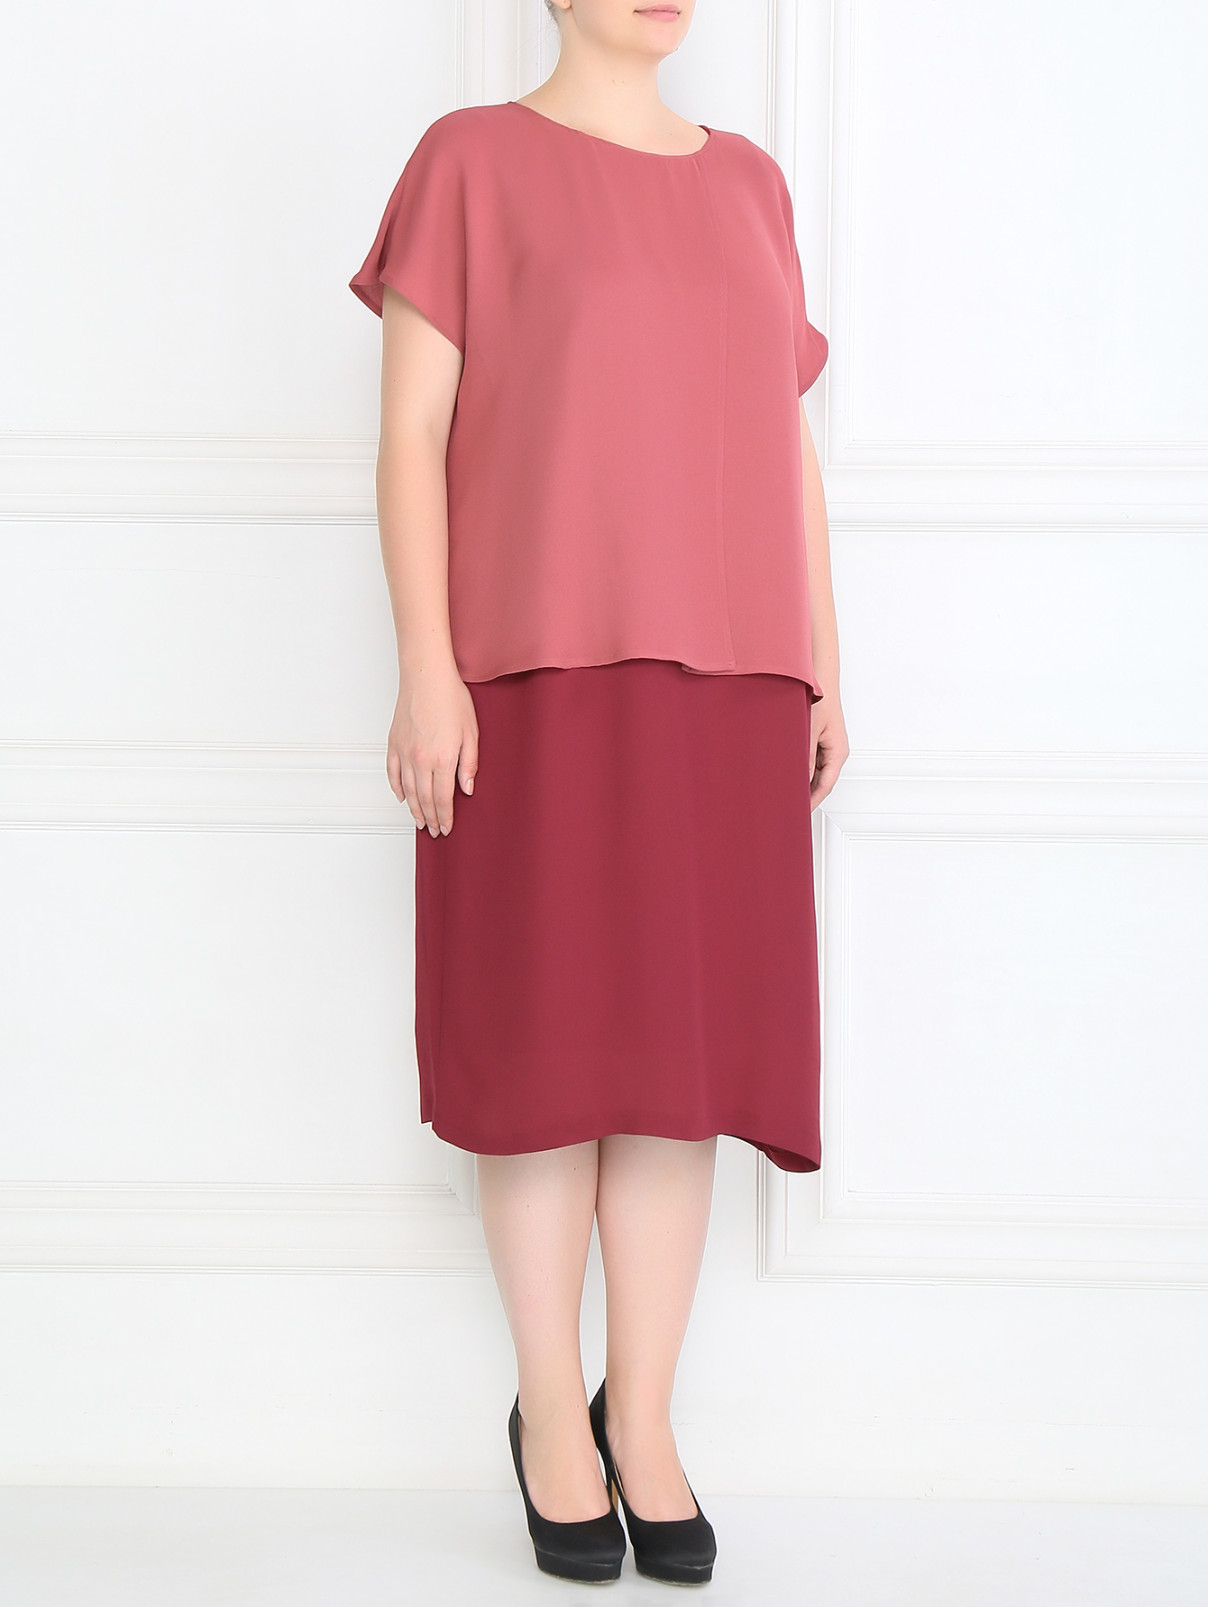 Платье с коротким рукавом с запахом Marina Rinaldi  –  Модель Общий вид  – Цвет:  Красный